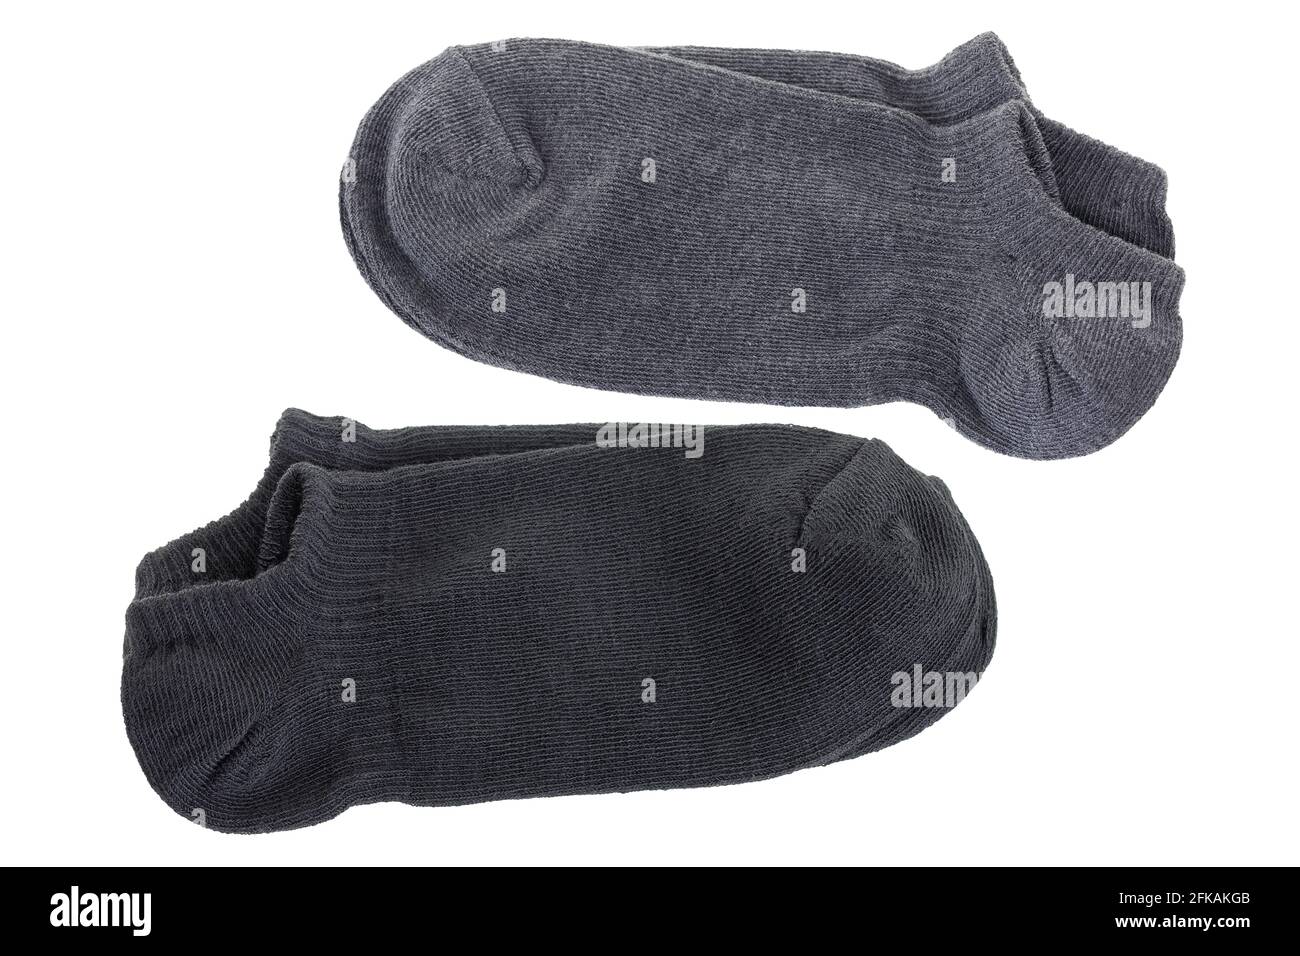 Chaussettes basses à la cheville de couleur simple. Chaussettes douces et confortables en gris noir isolées sur fond blanc. Banque D'Images